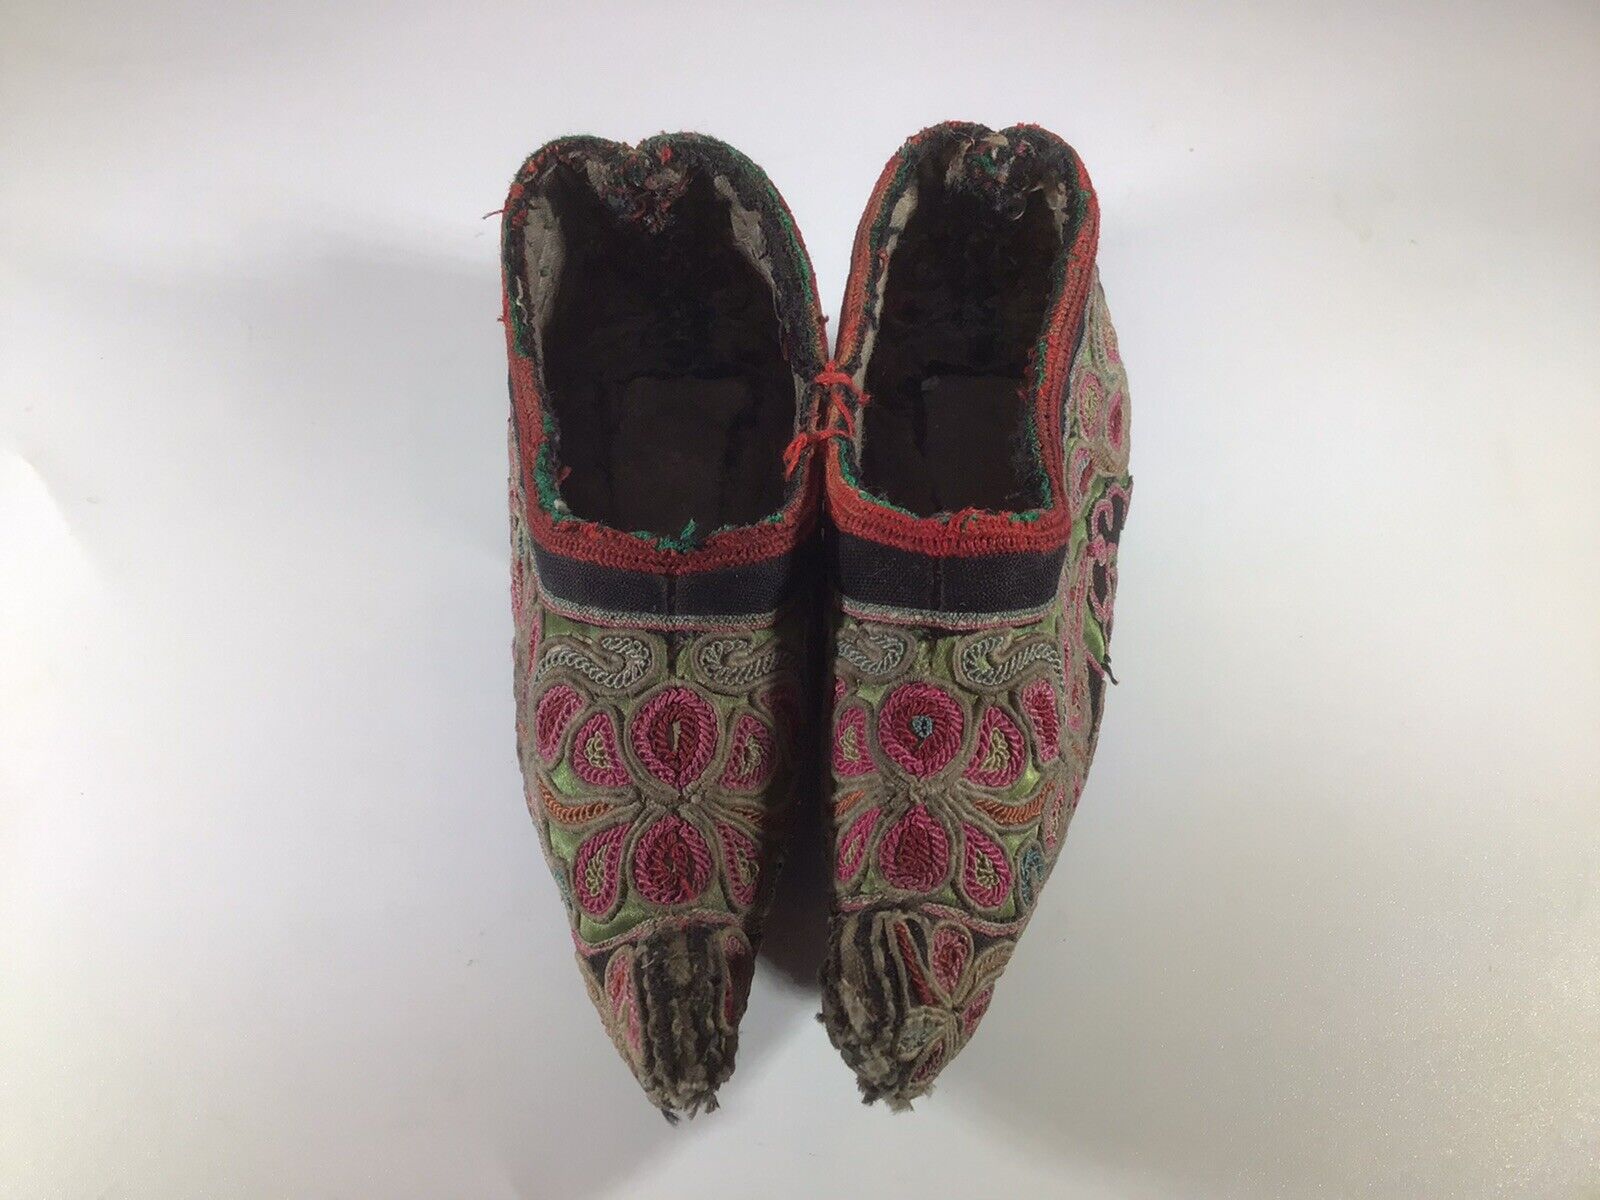 Zapatos chinos antiguos Zapato de plataforma de de pie bordado | eBay